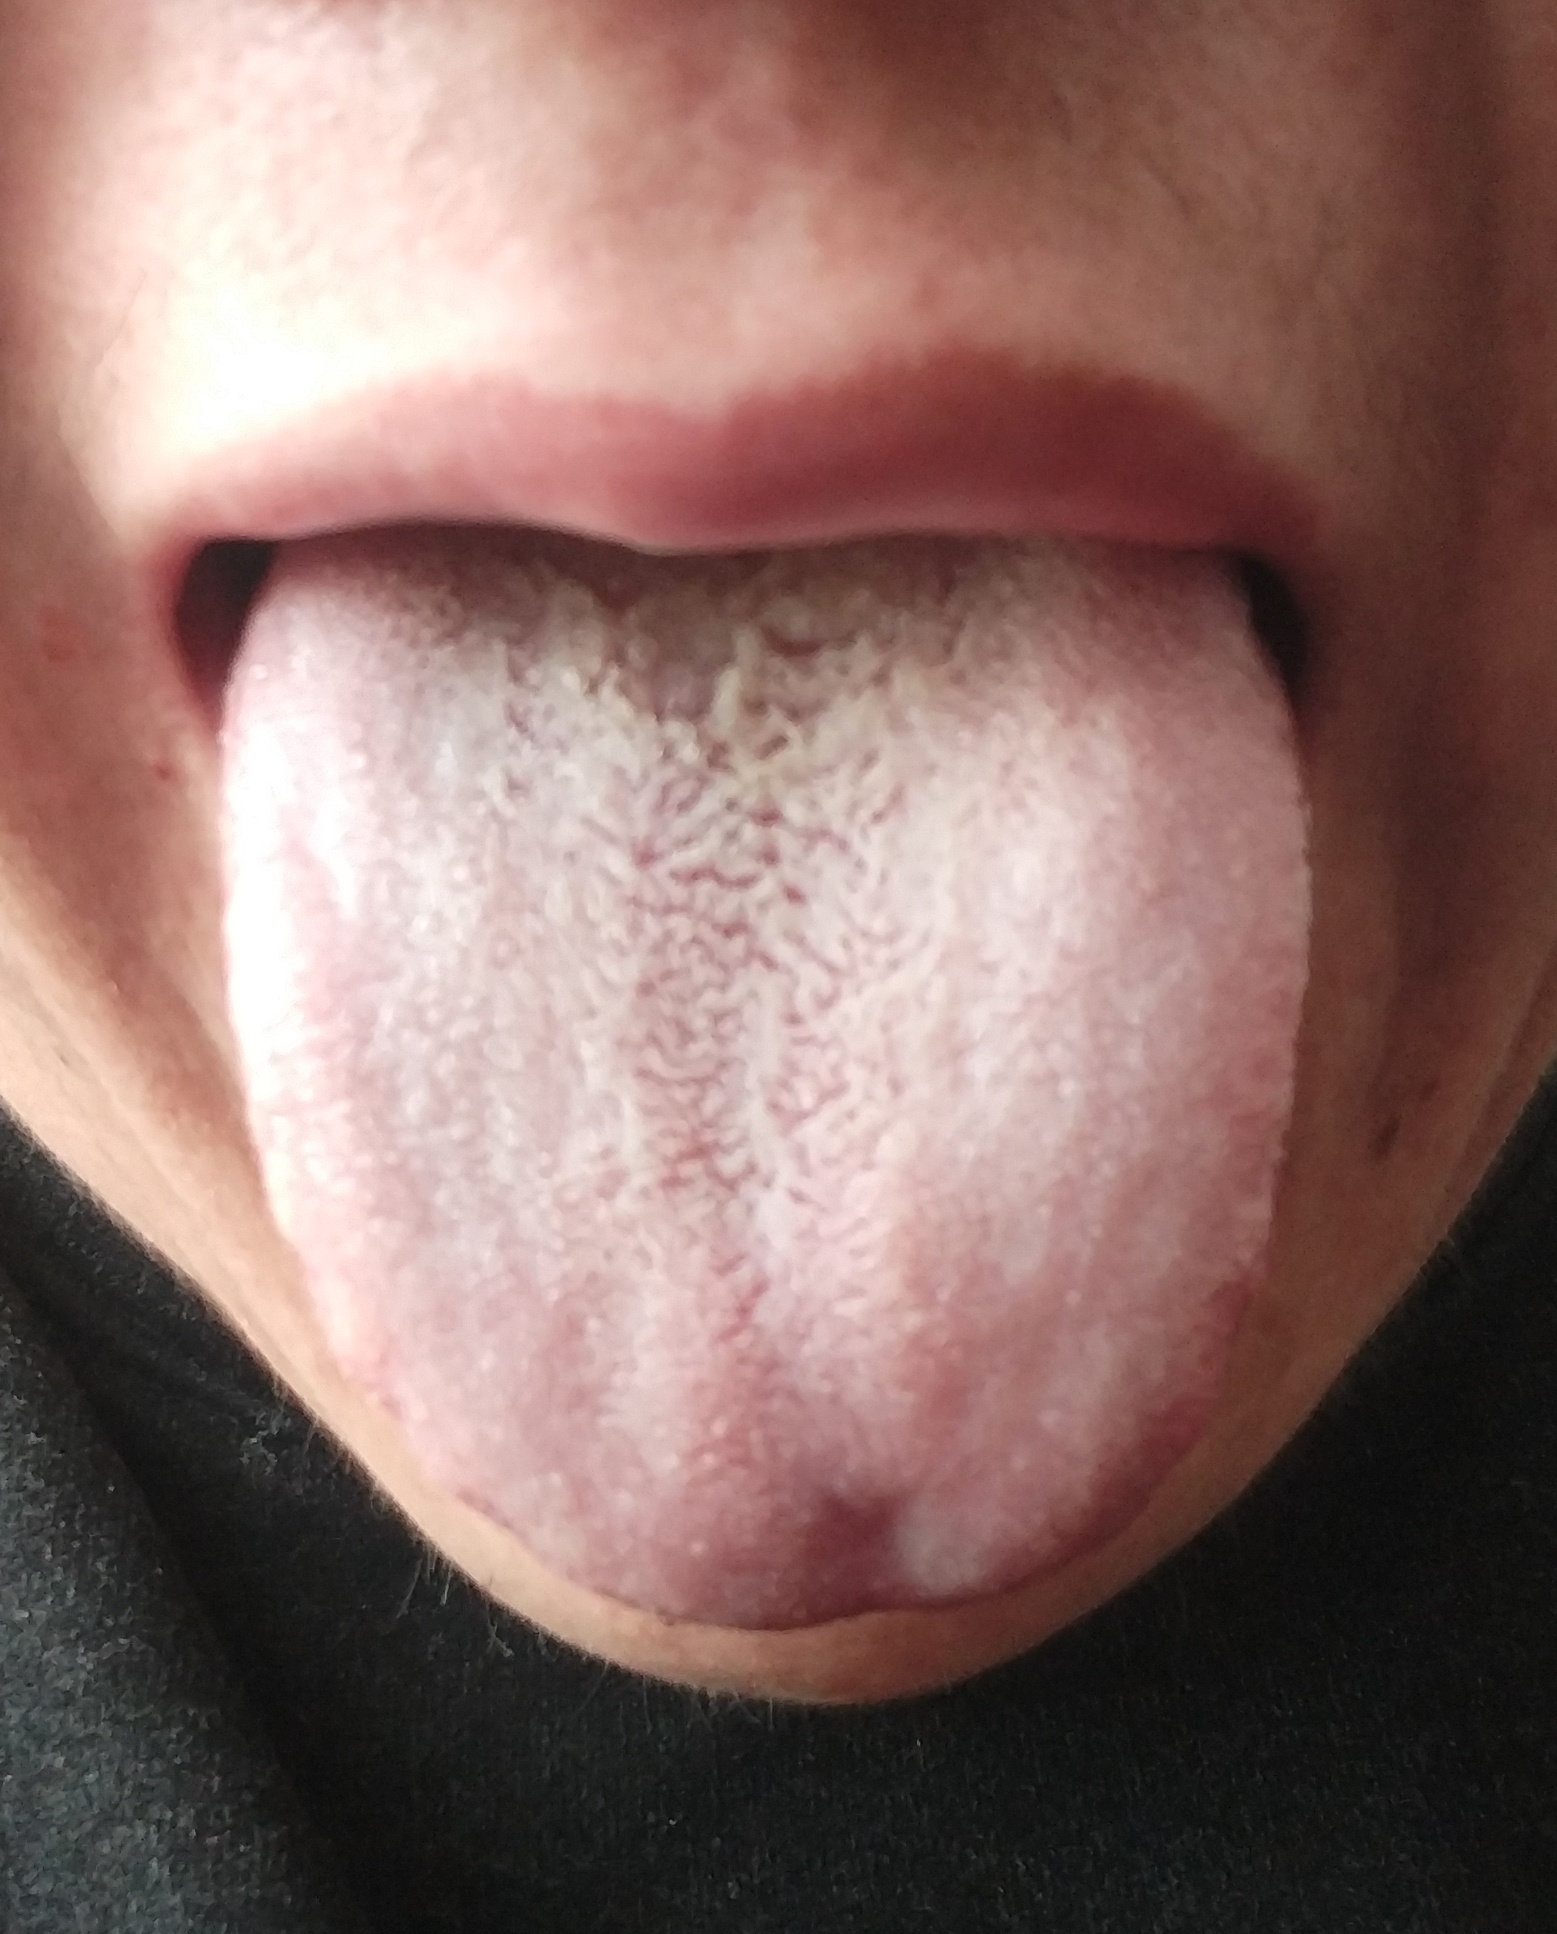 病因,治疗方法想得到什么帮助:没治疗过曾经的治疗情况:最近发现舌头